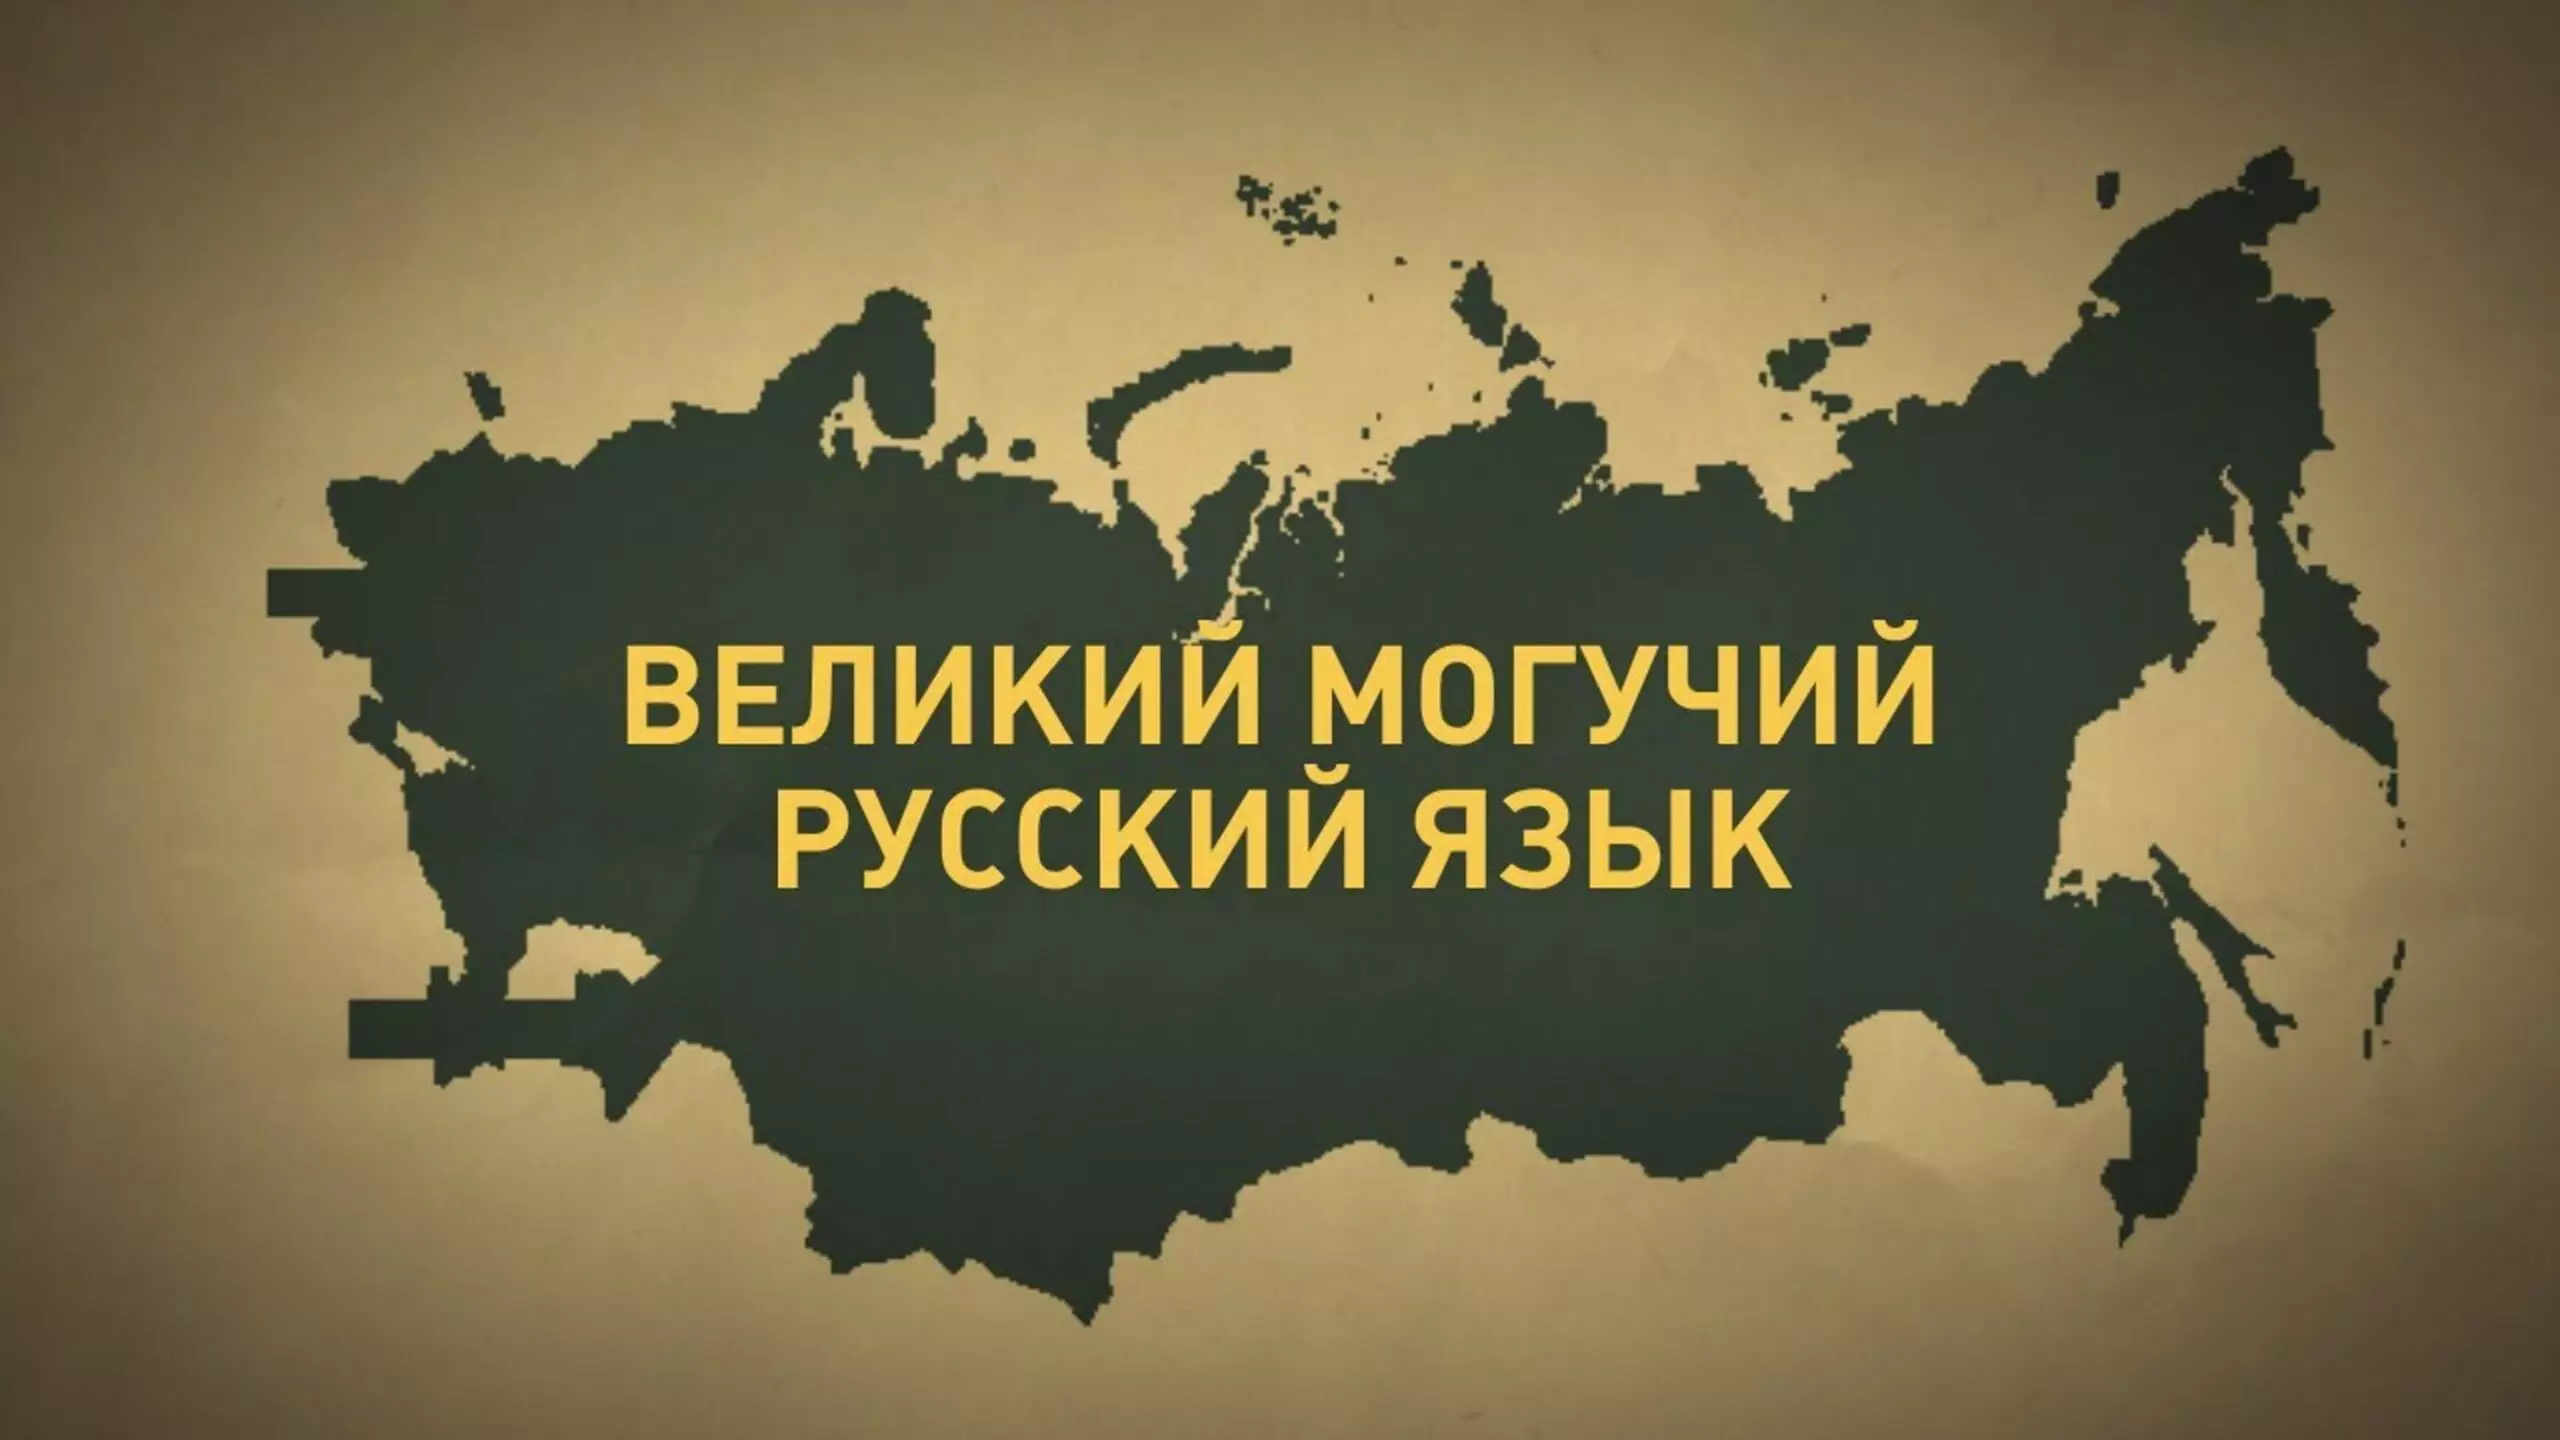 Принят закон, запрещающий использование в русском языке иностранной лексики